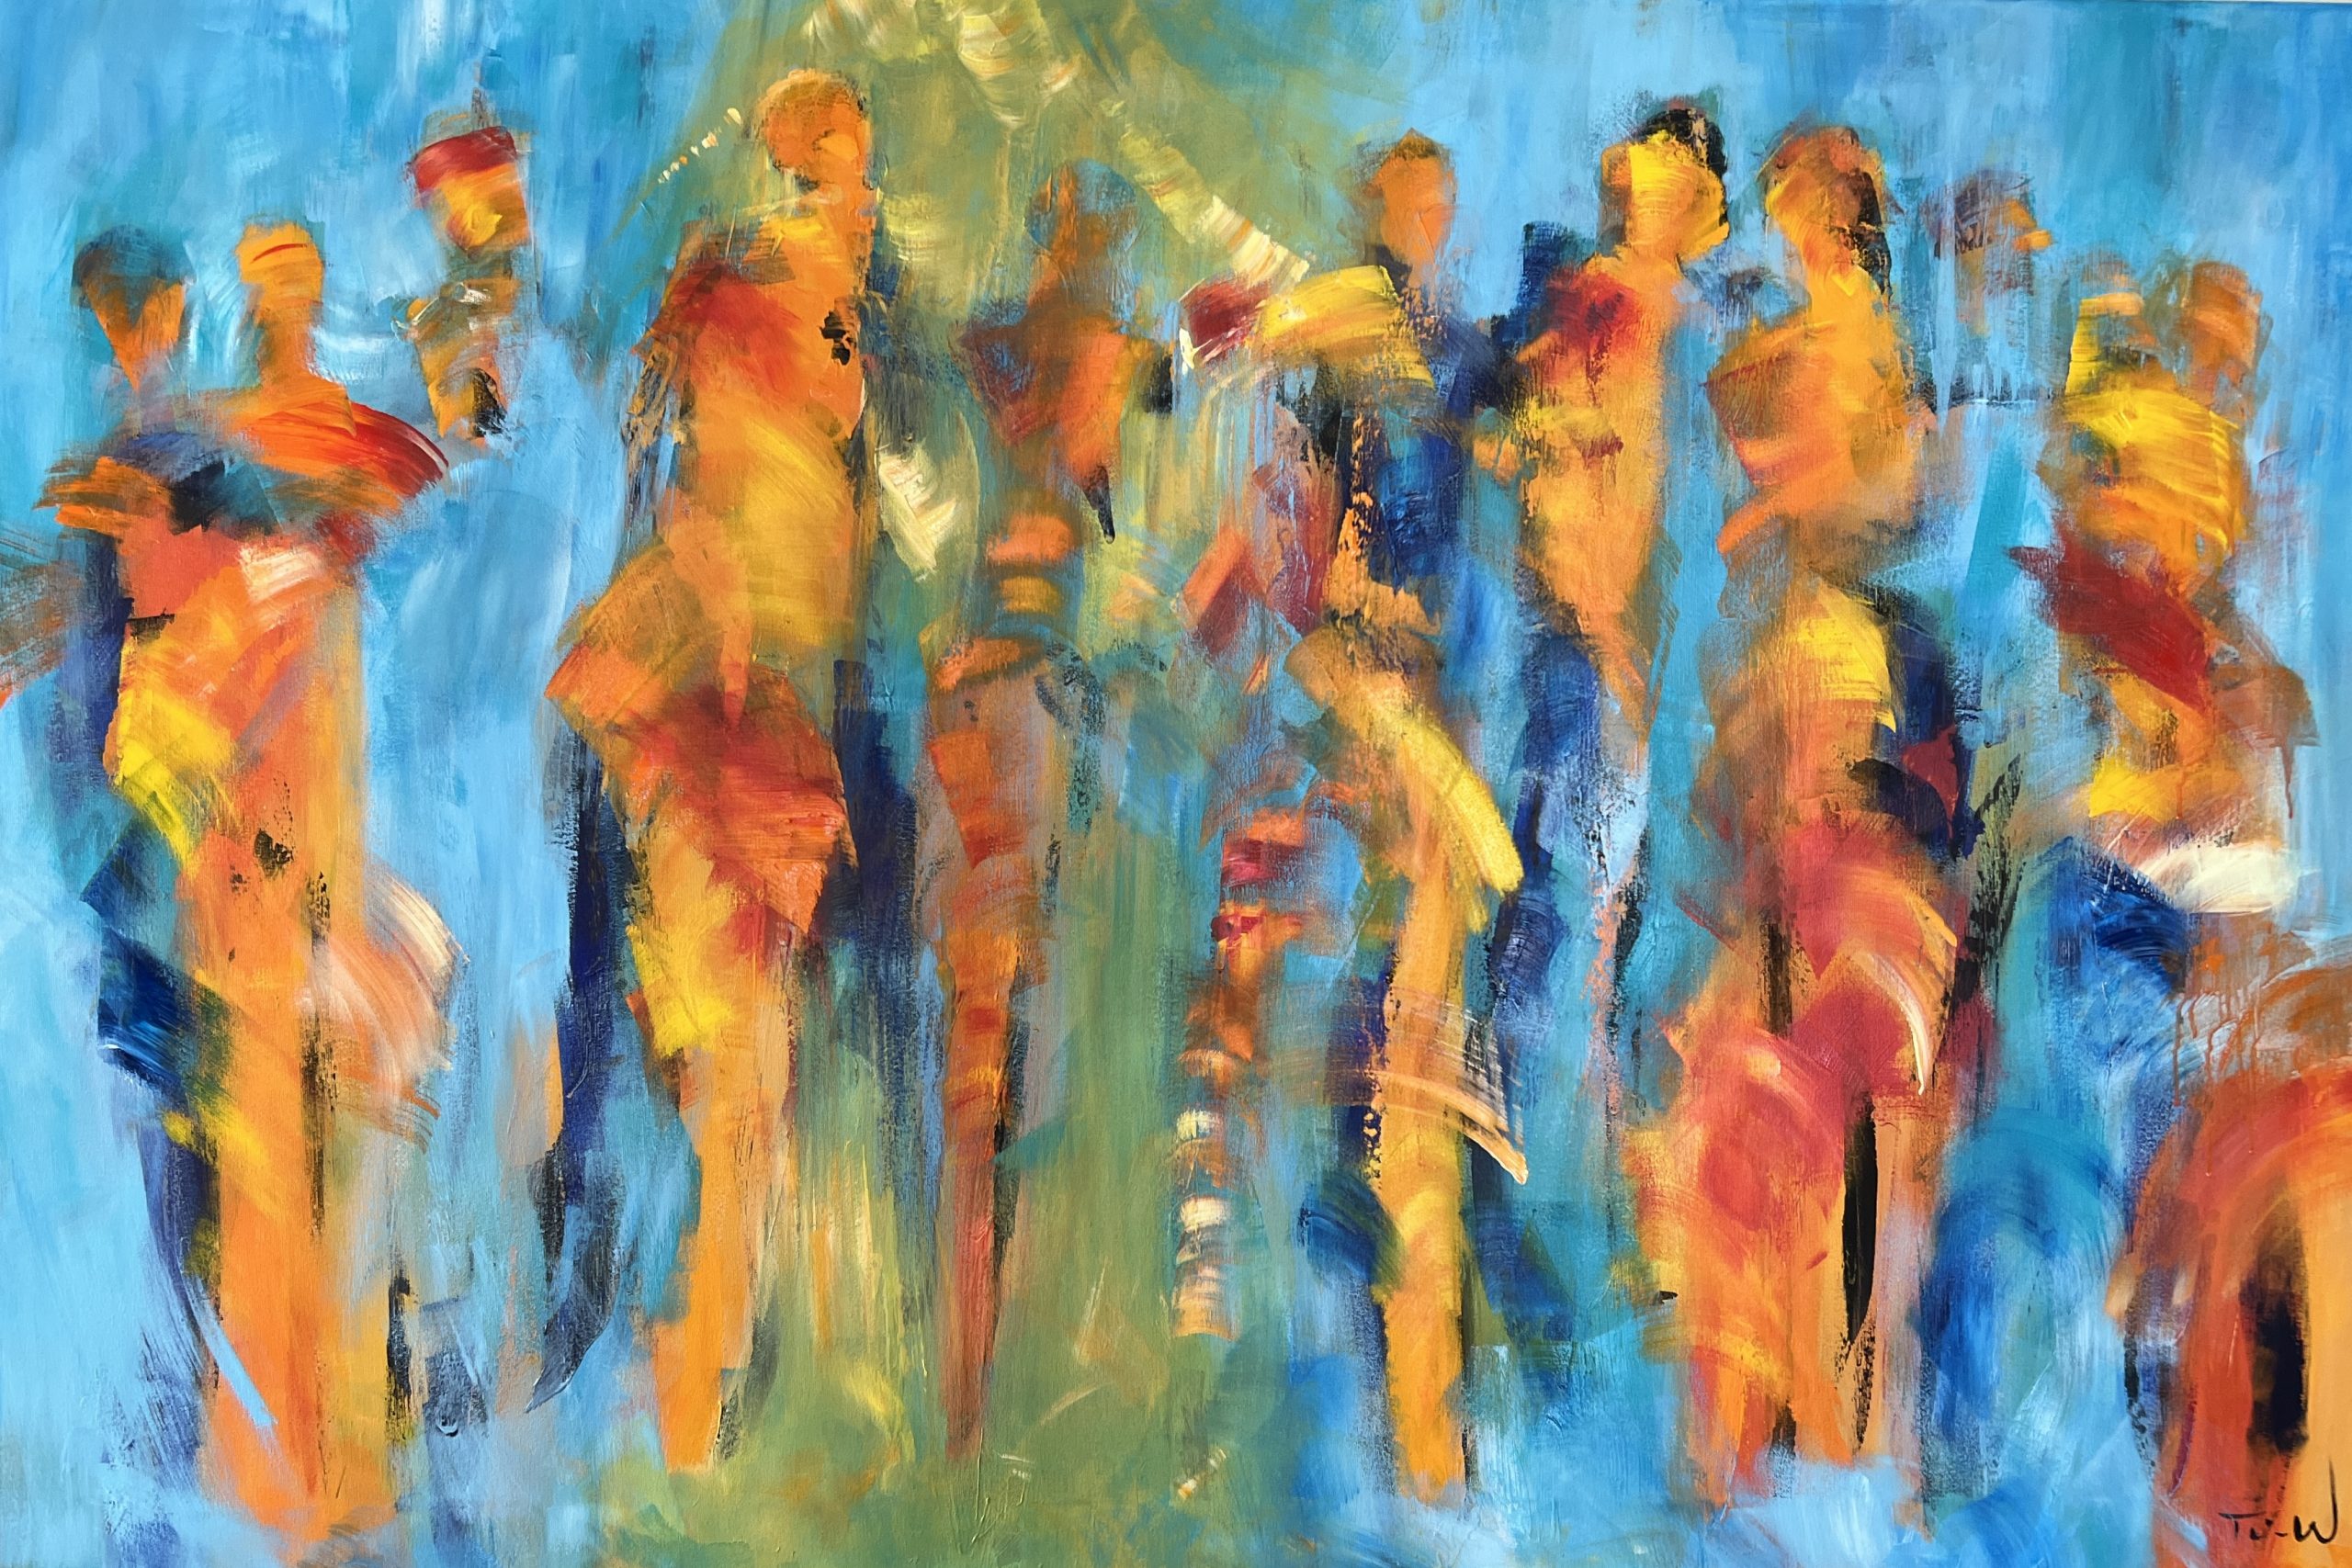 Flot stort farverigt maleri, hvor den gule stribe giver en spændende kontrast til den blå baggrund.